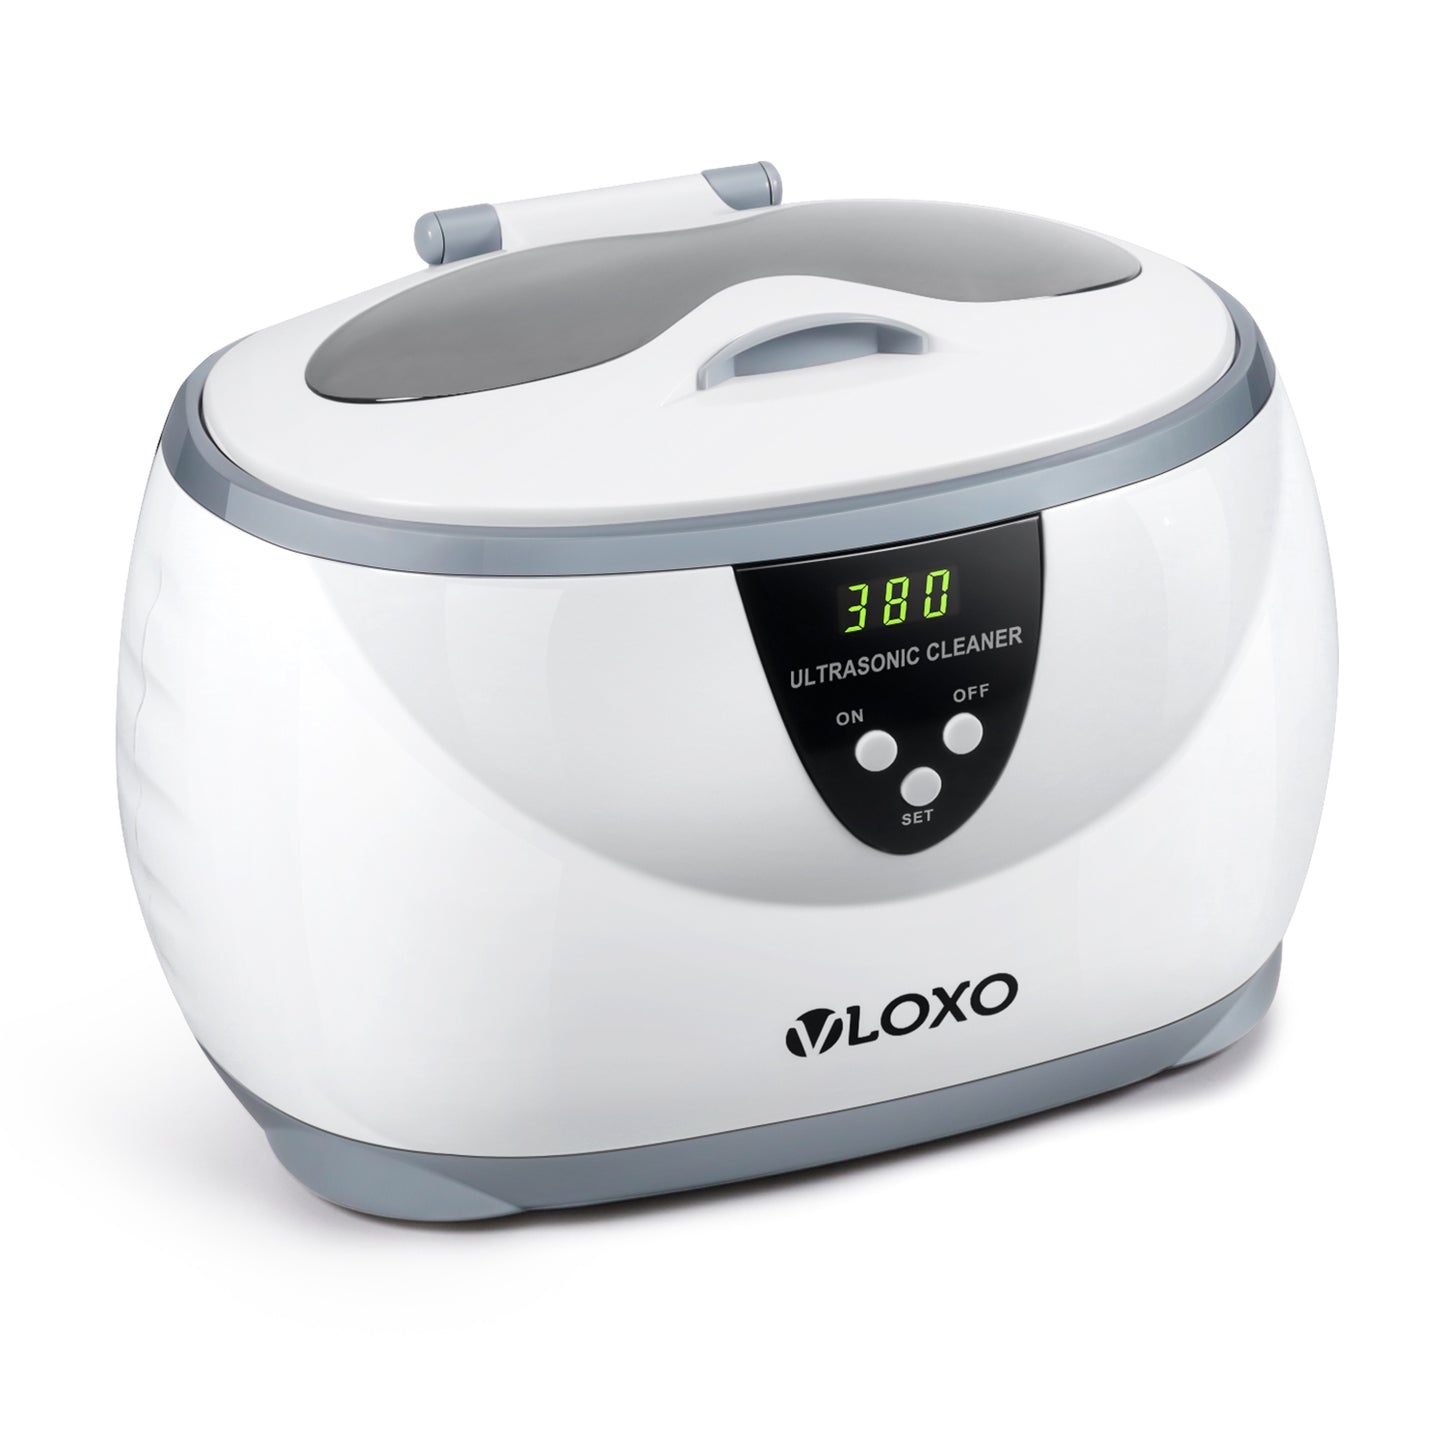 VLOXO CD-3800 Ultrasonic Cleaner